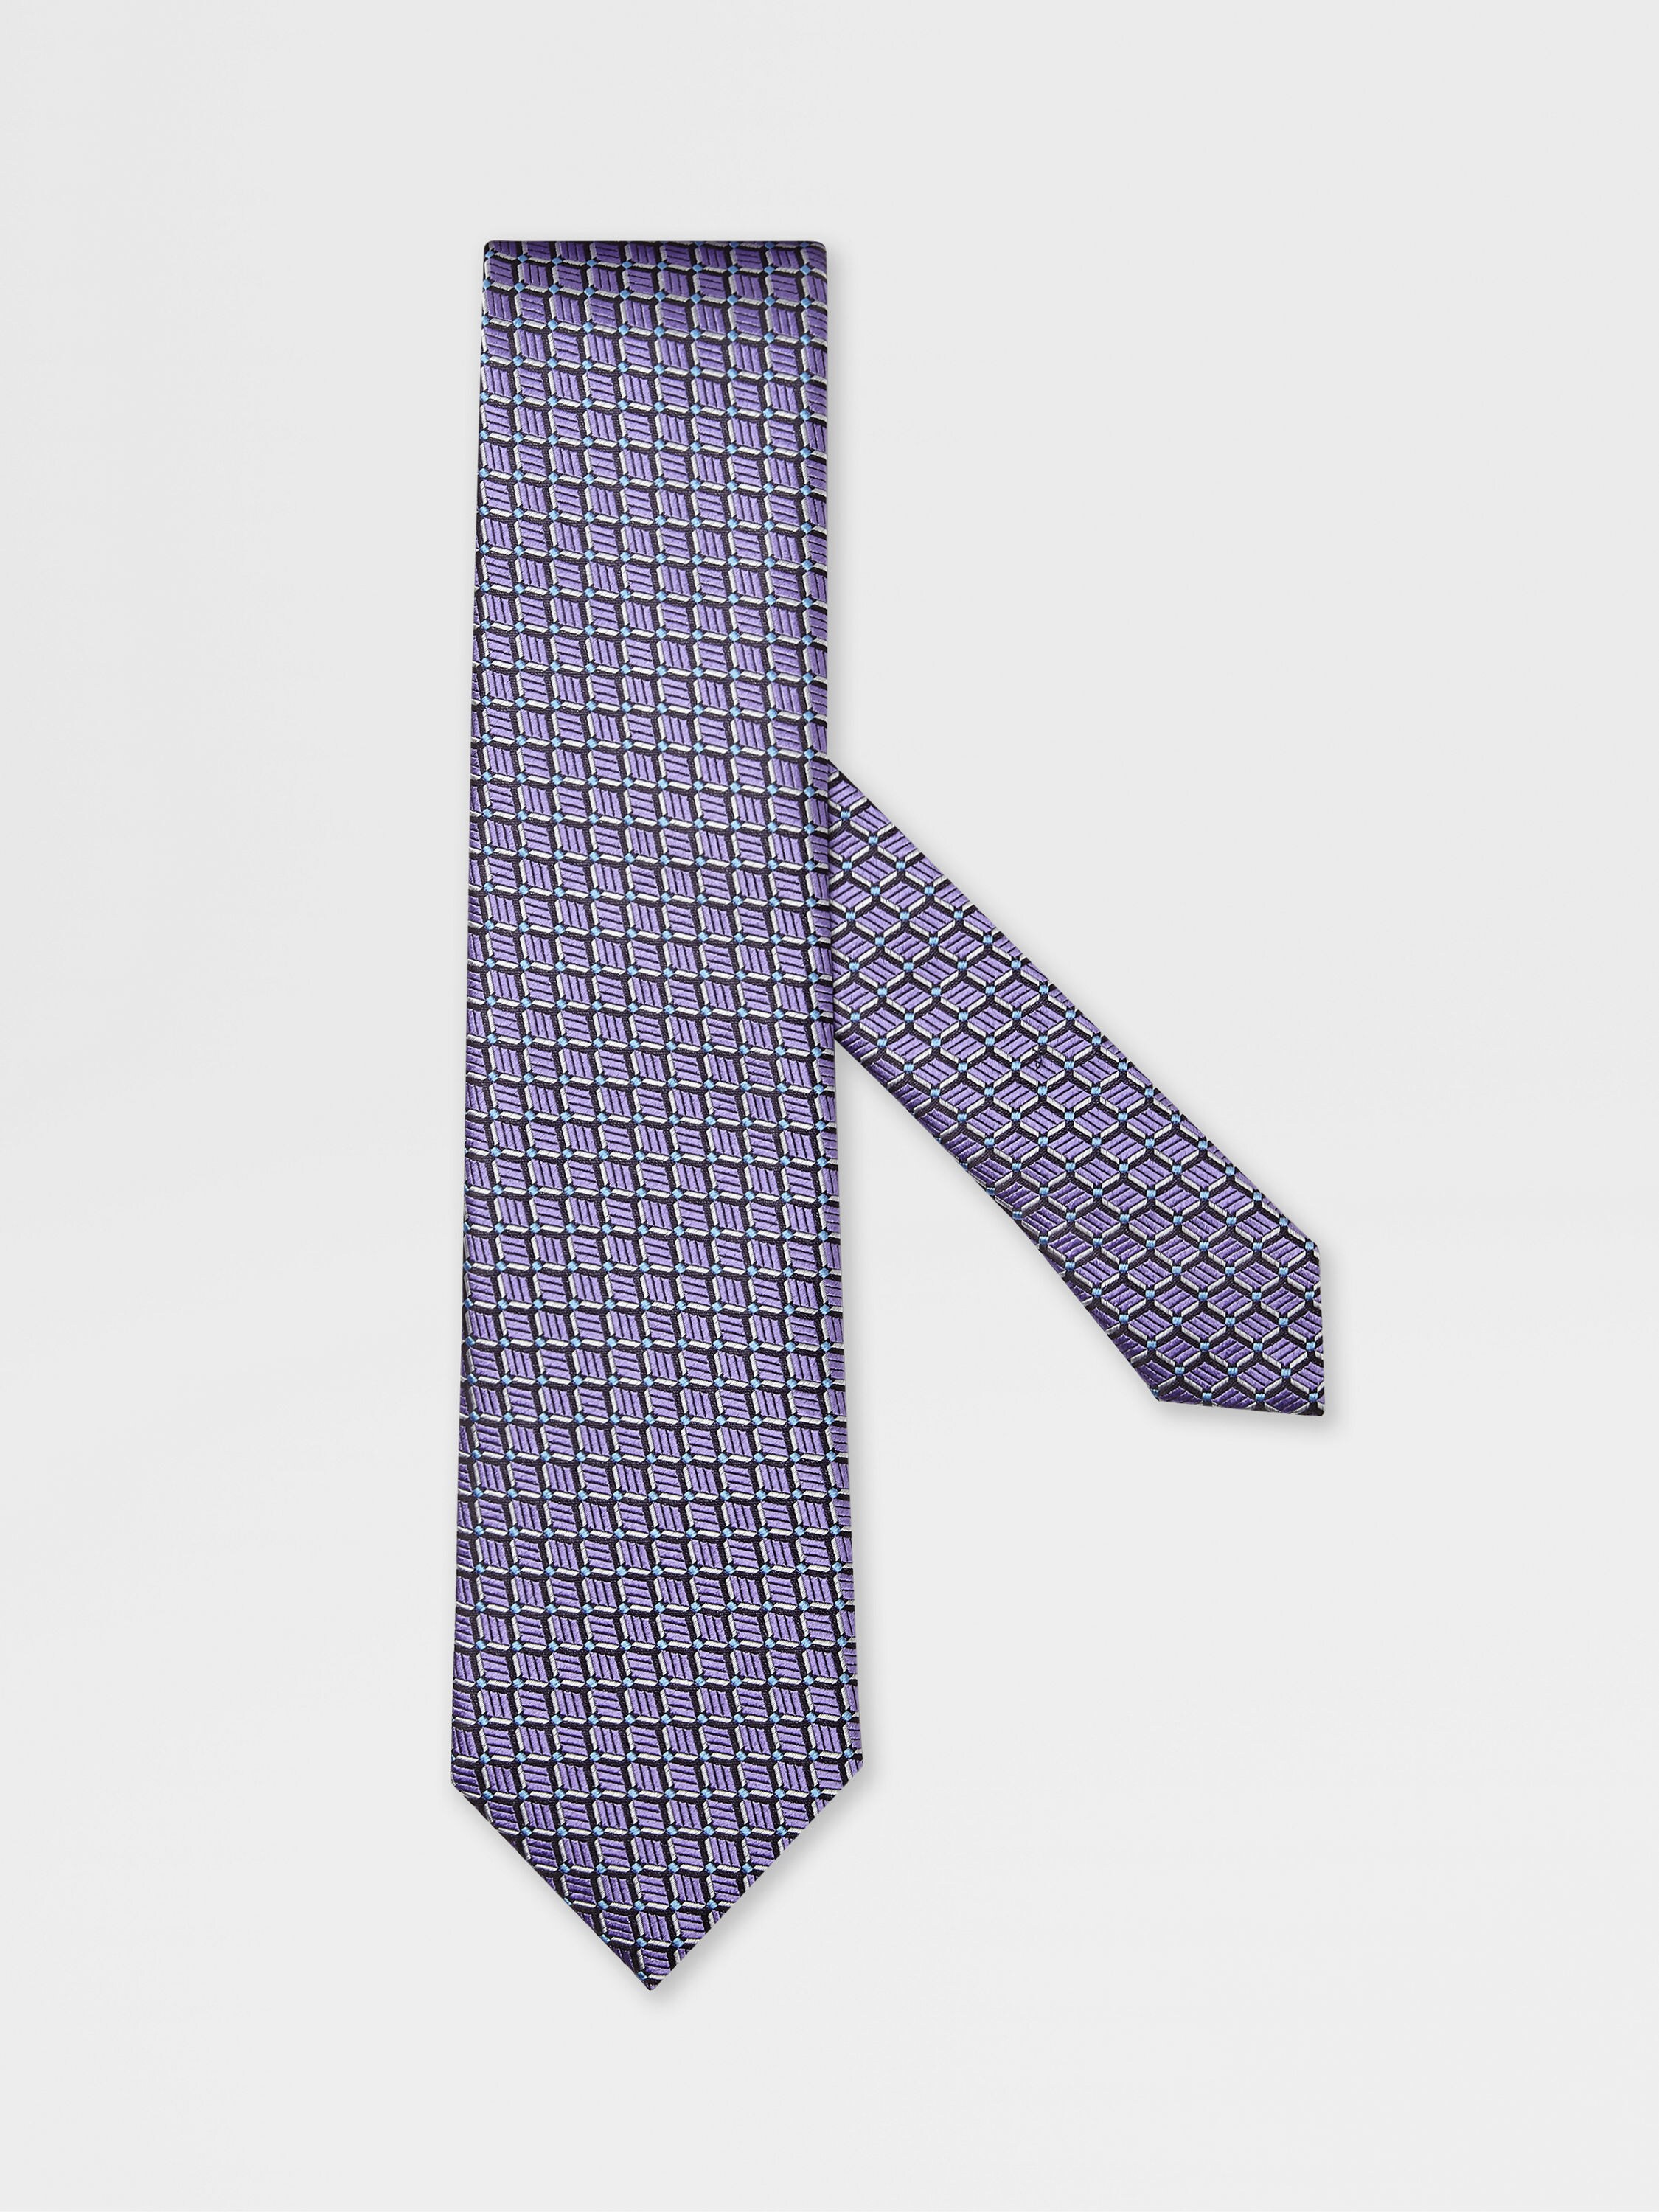 紫罗兰色桑蚕丝提花领带